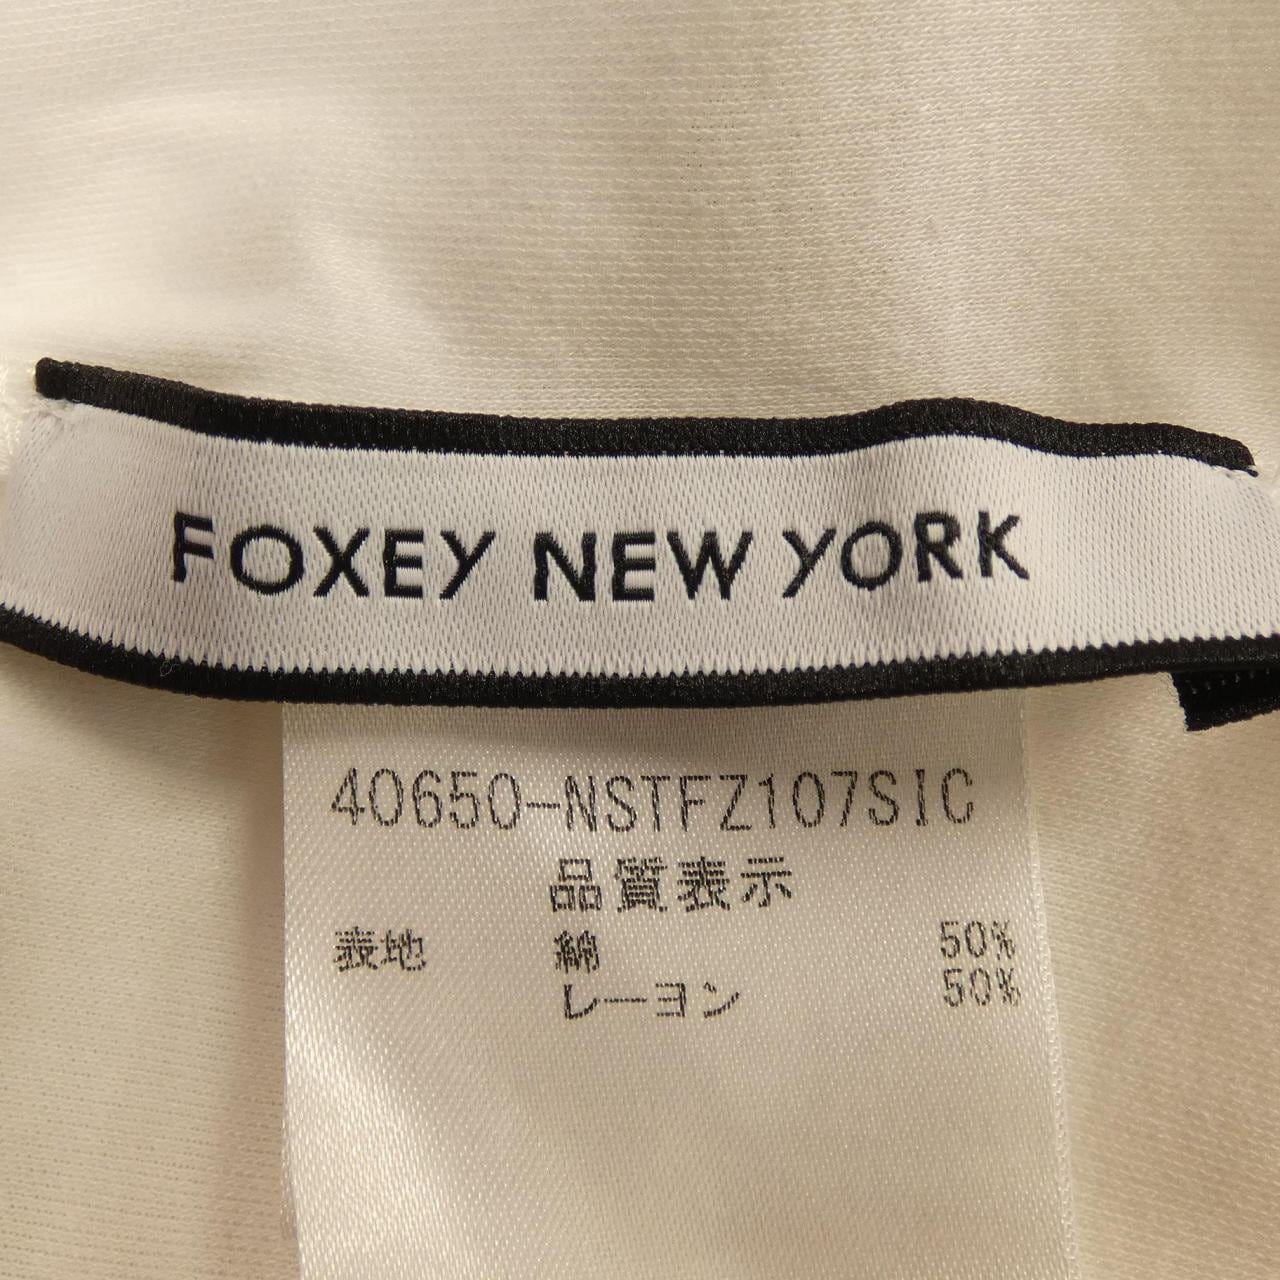 ご注意くださいフォクシーニューヨーク FOXEY NEW YORK Tシャツ